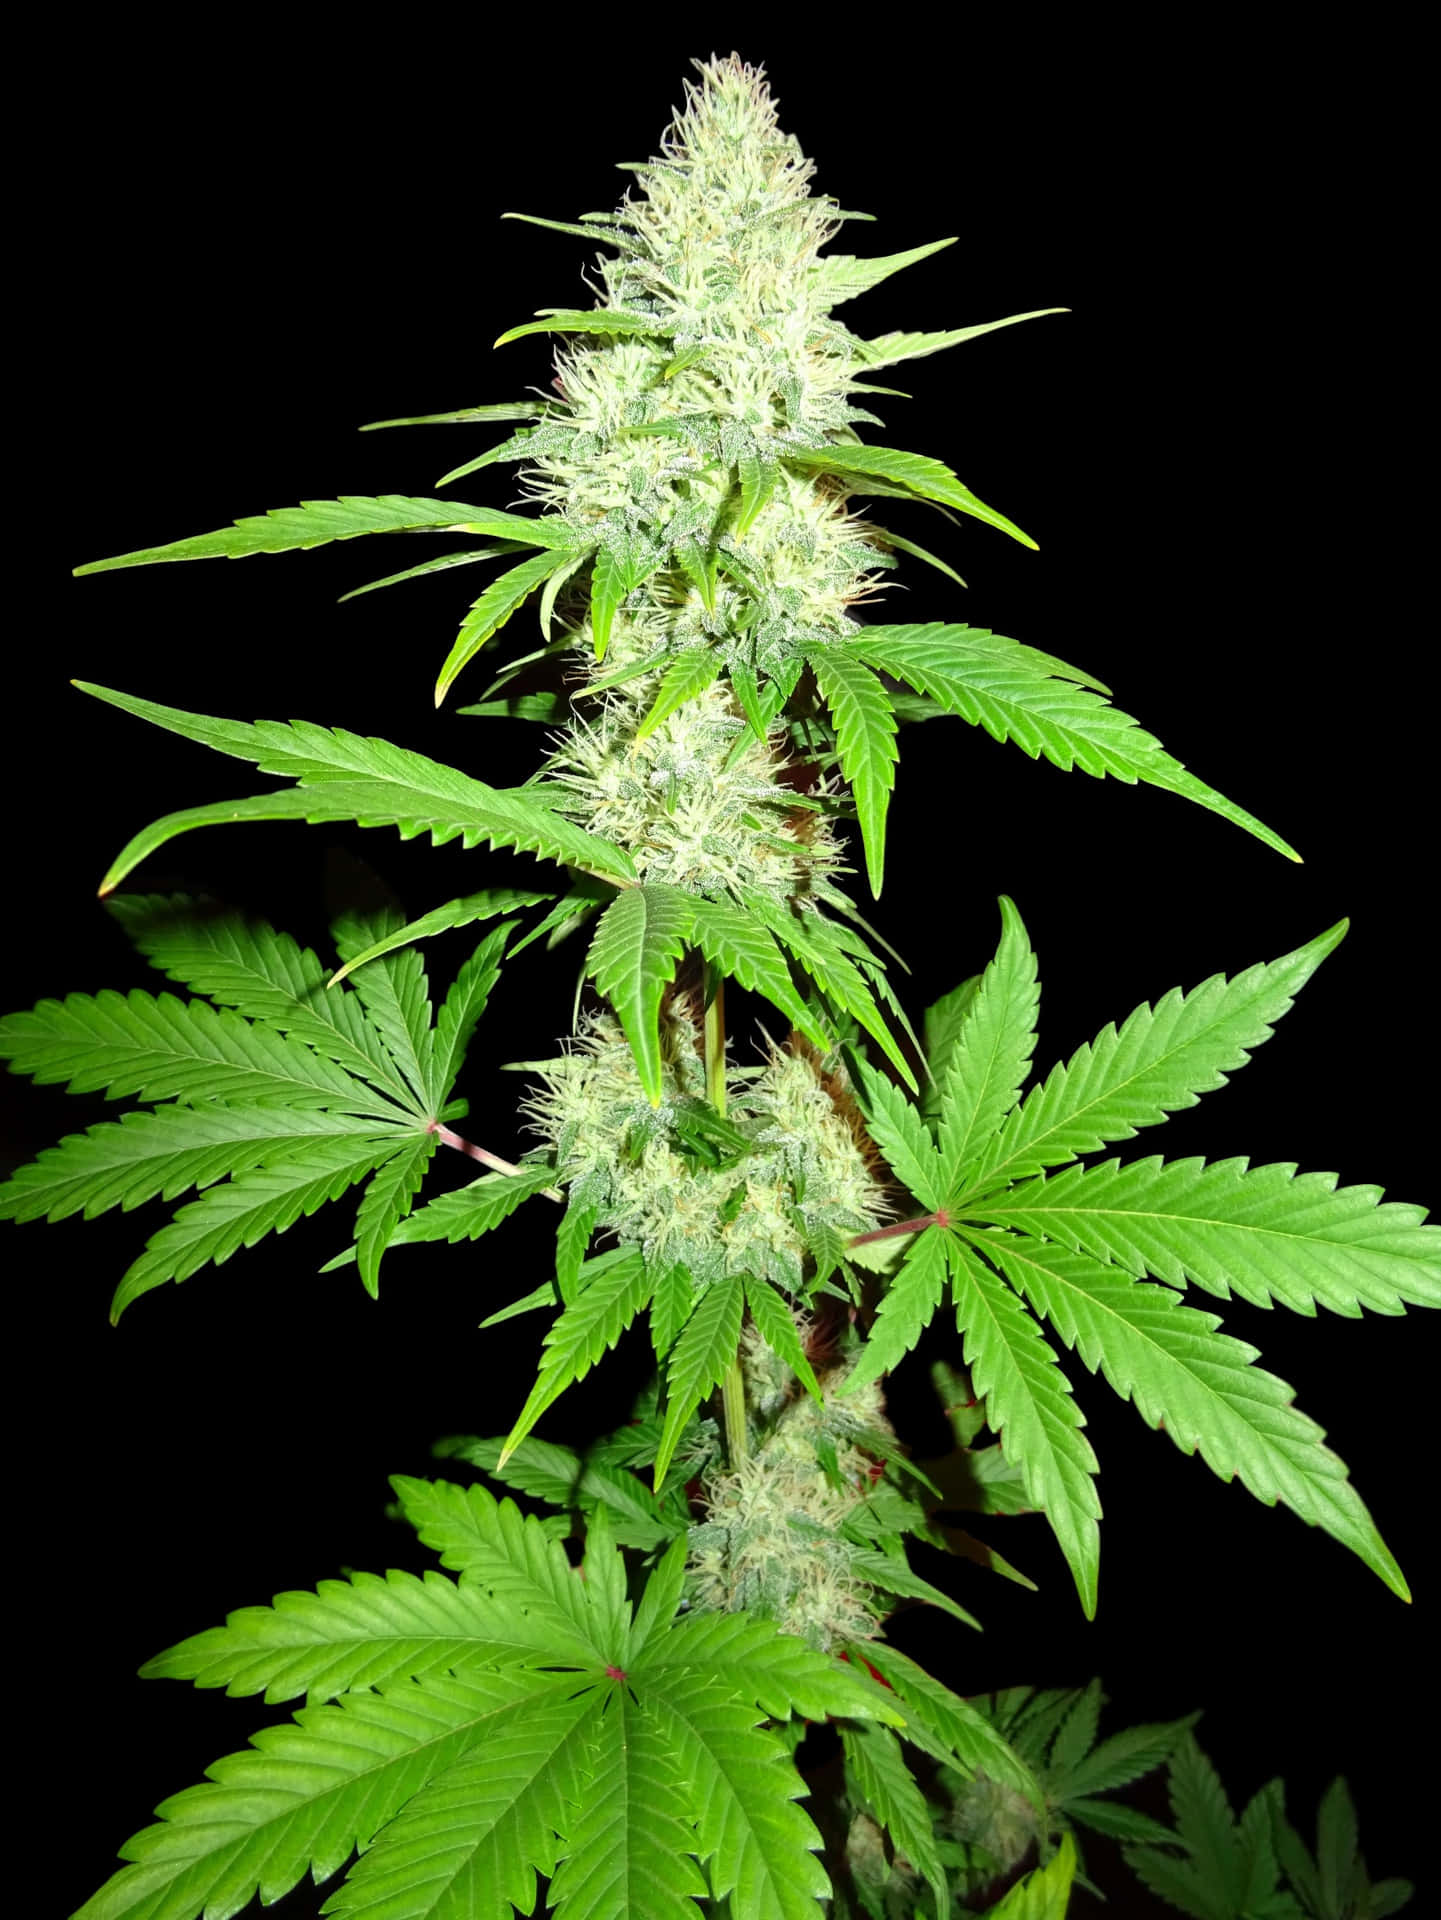 Illuminated Cannabis Plants